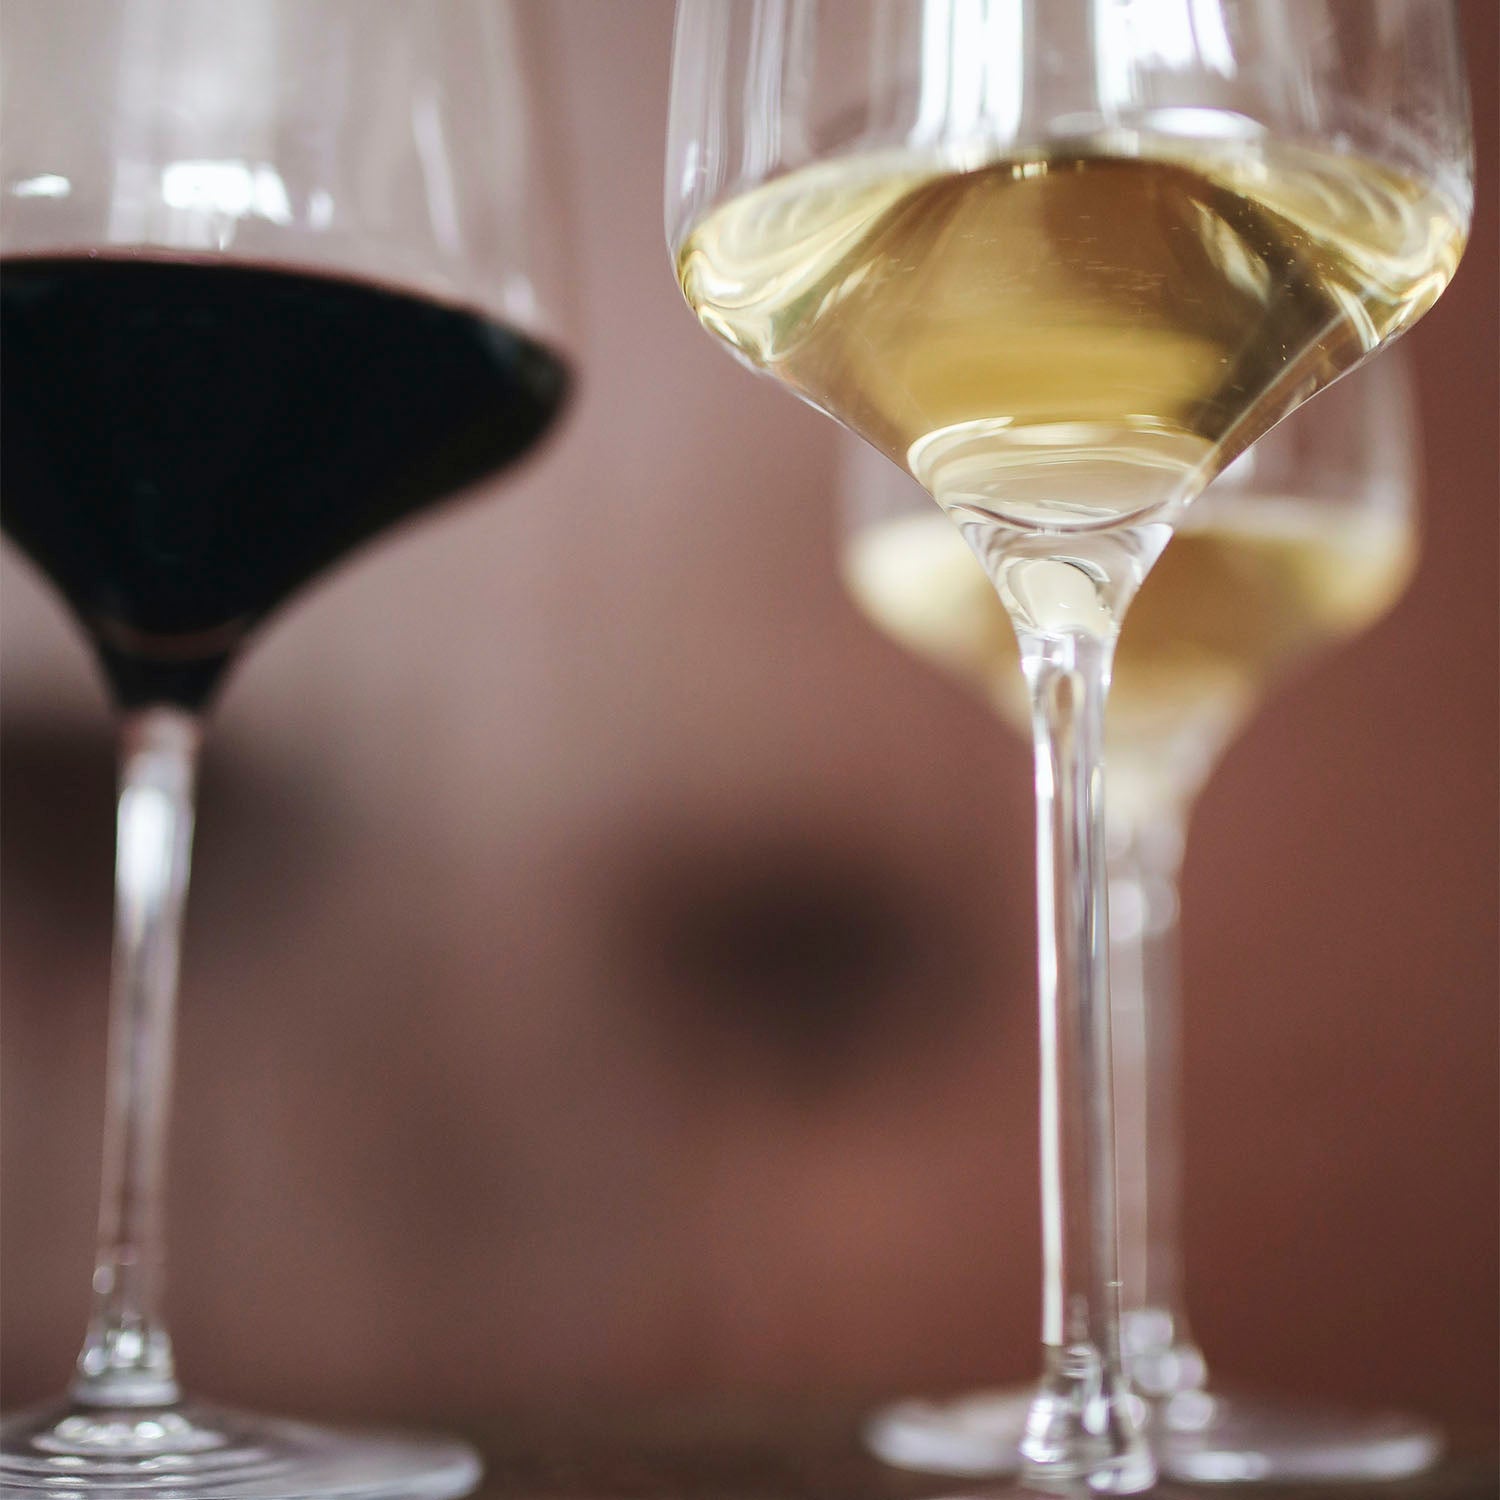 Vino Blanco Oremus Tokaji Mandolas 2020 de 750 ml